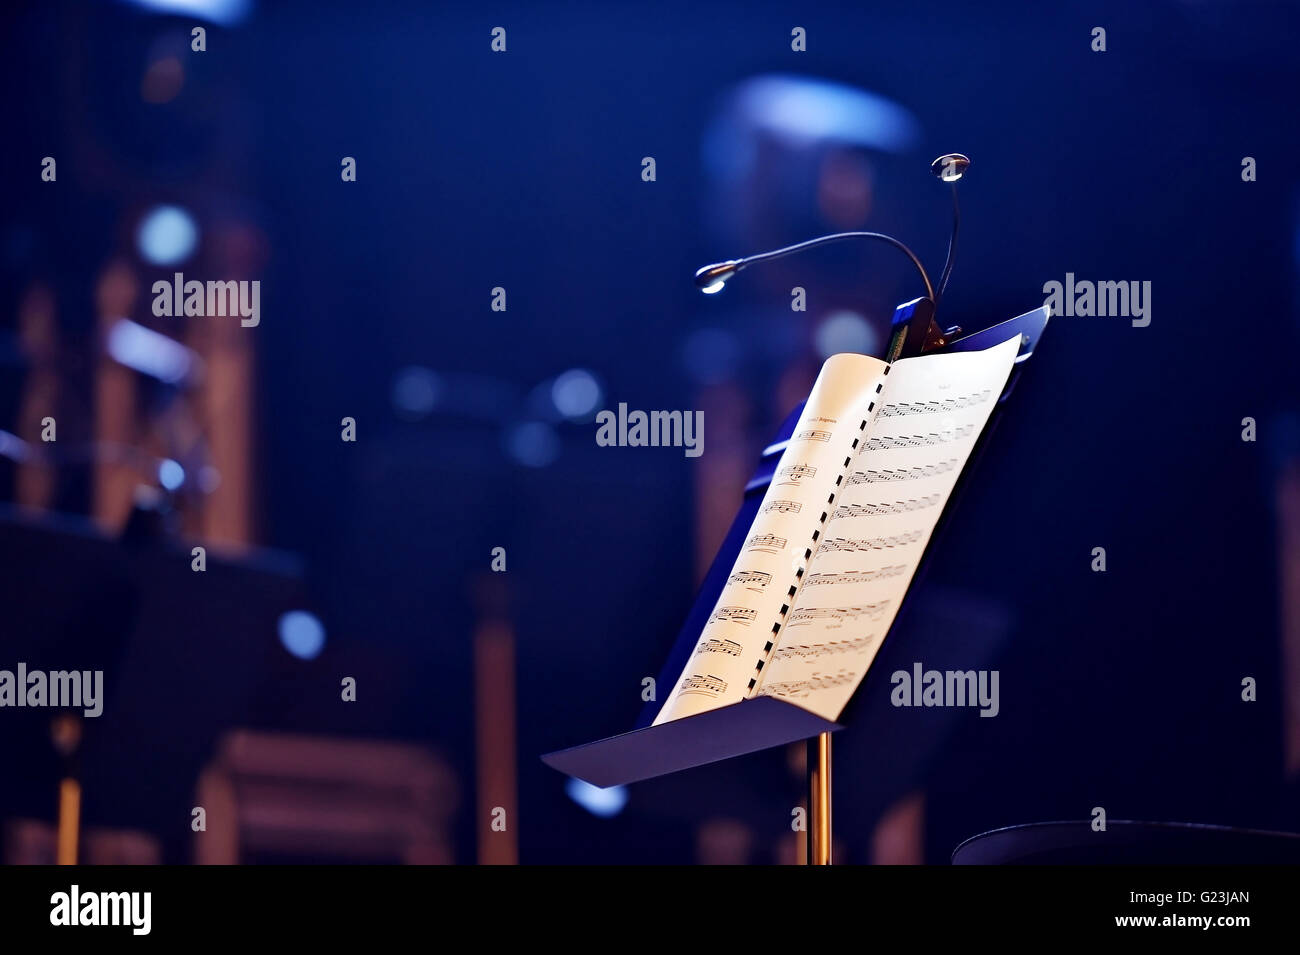 Stand de note de musique avec des lumières LED pendant un concert Banque D'Images